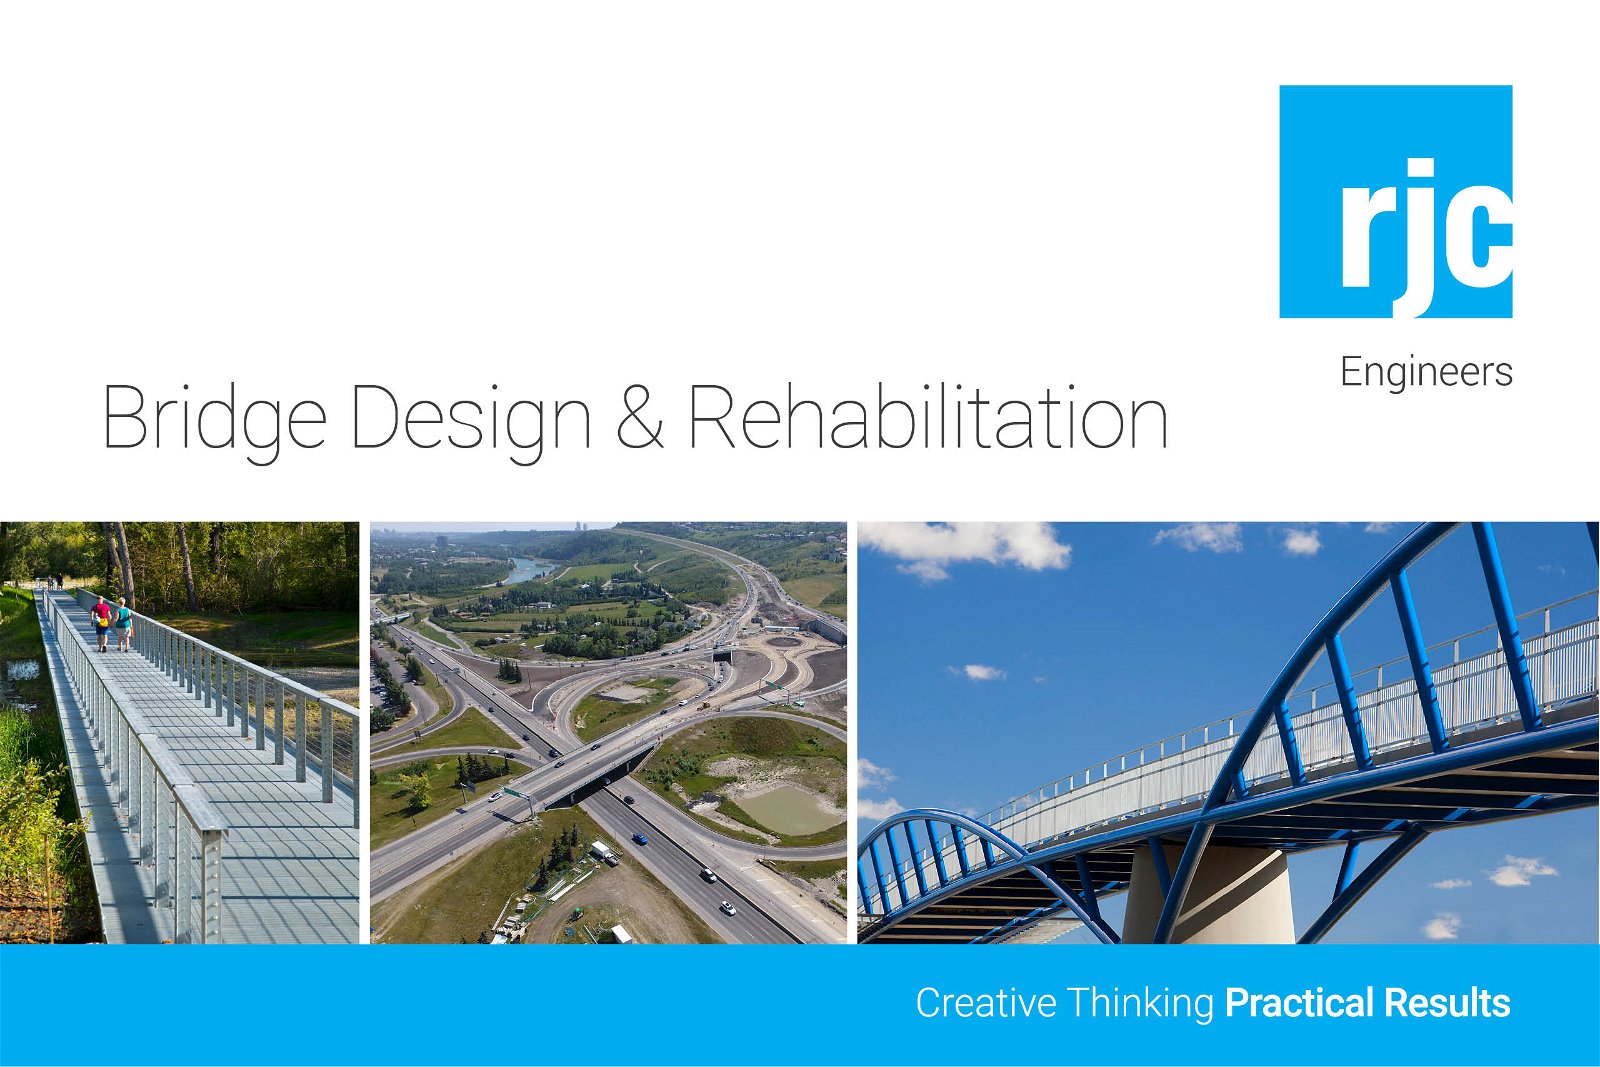 Bridge Design & Rehabilitation